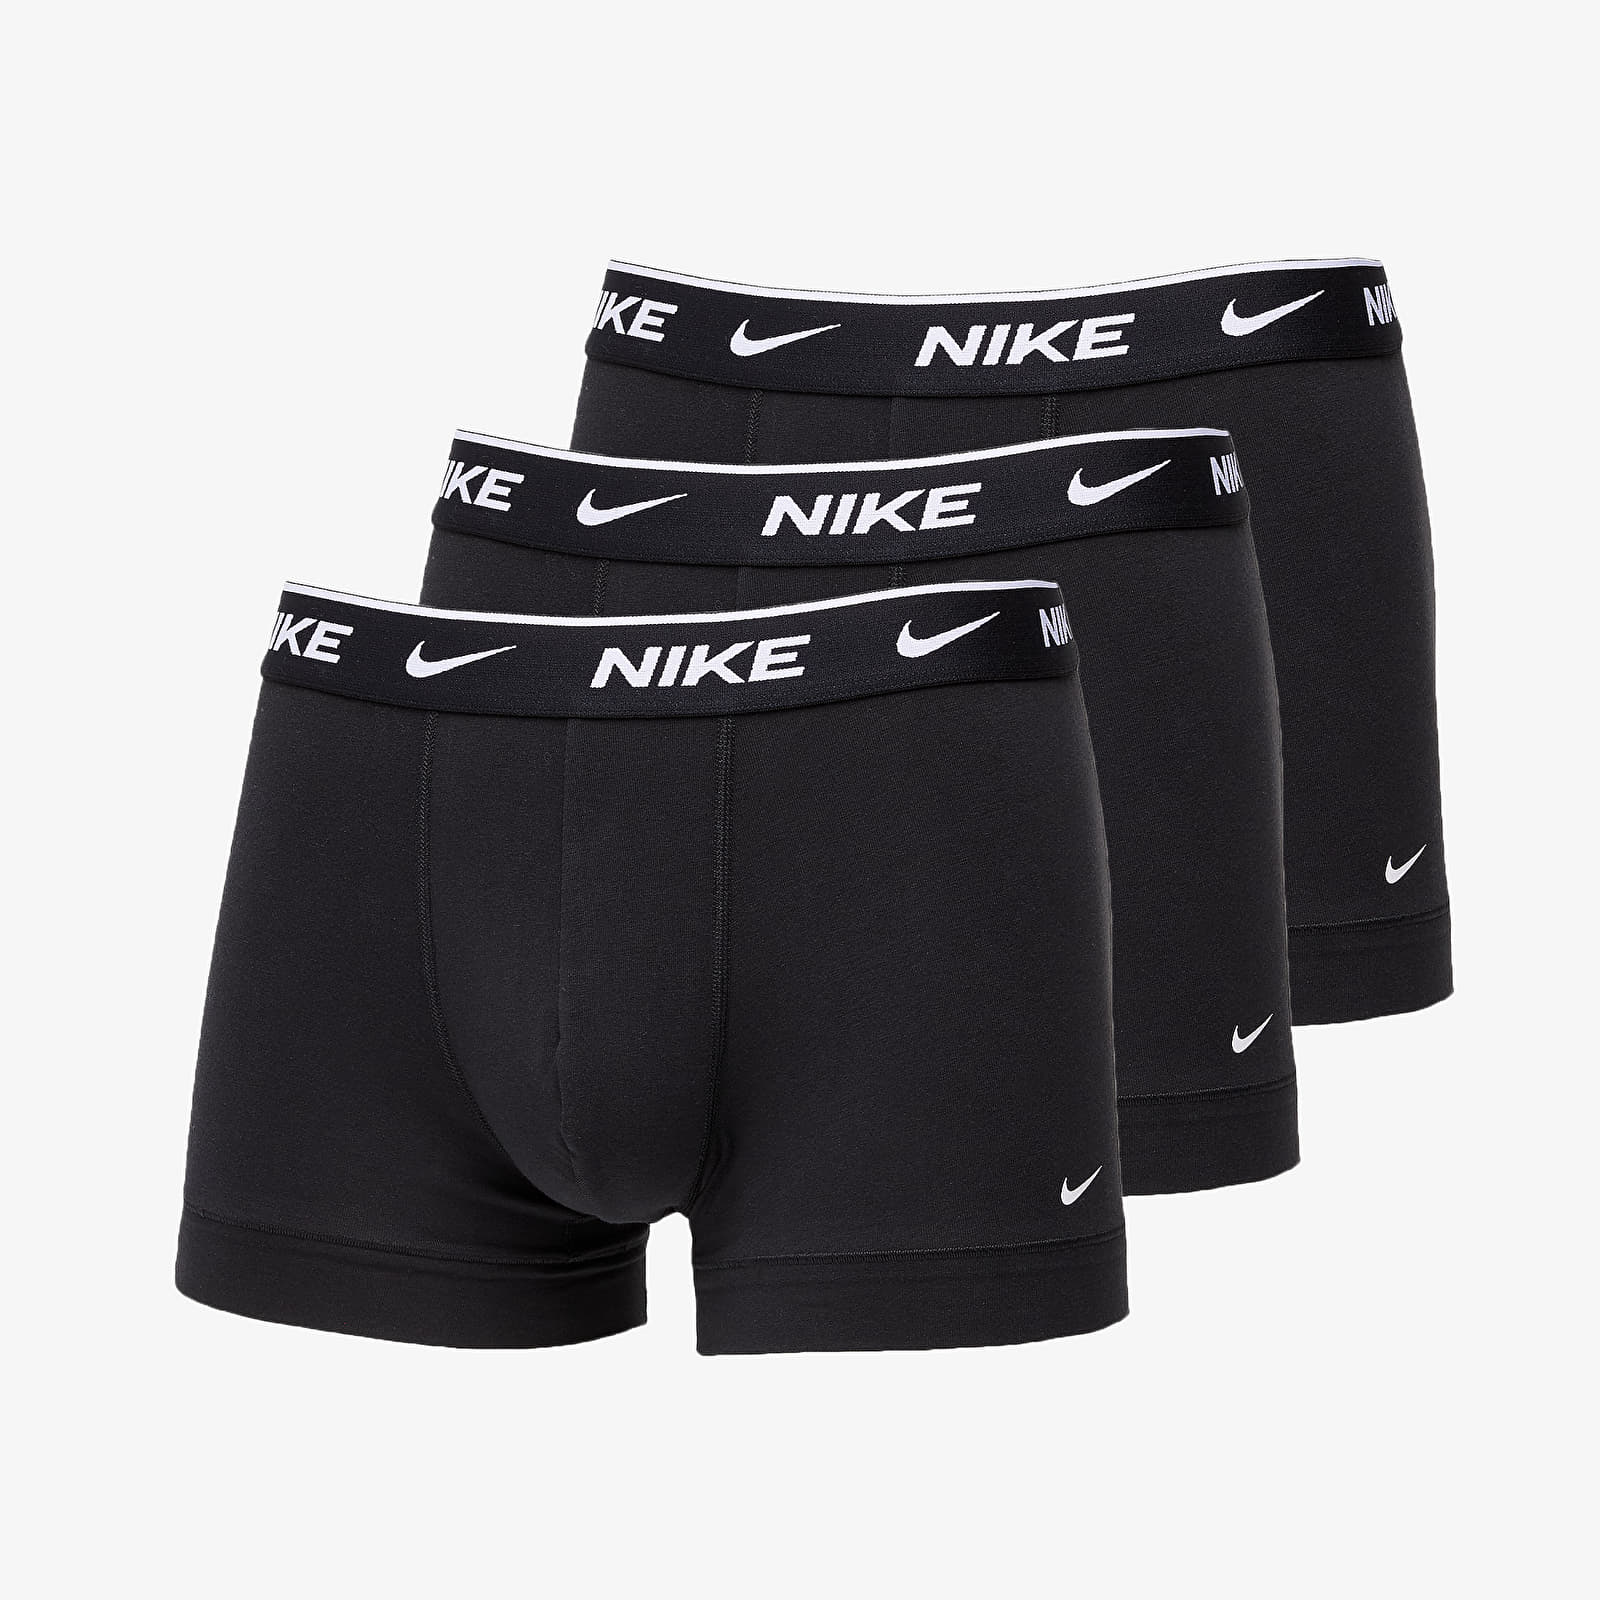 Bielizna męska Nike Trunk 3 Pack Black